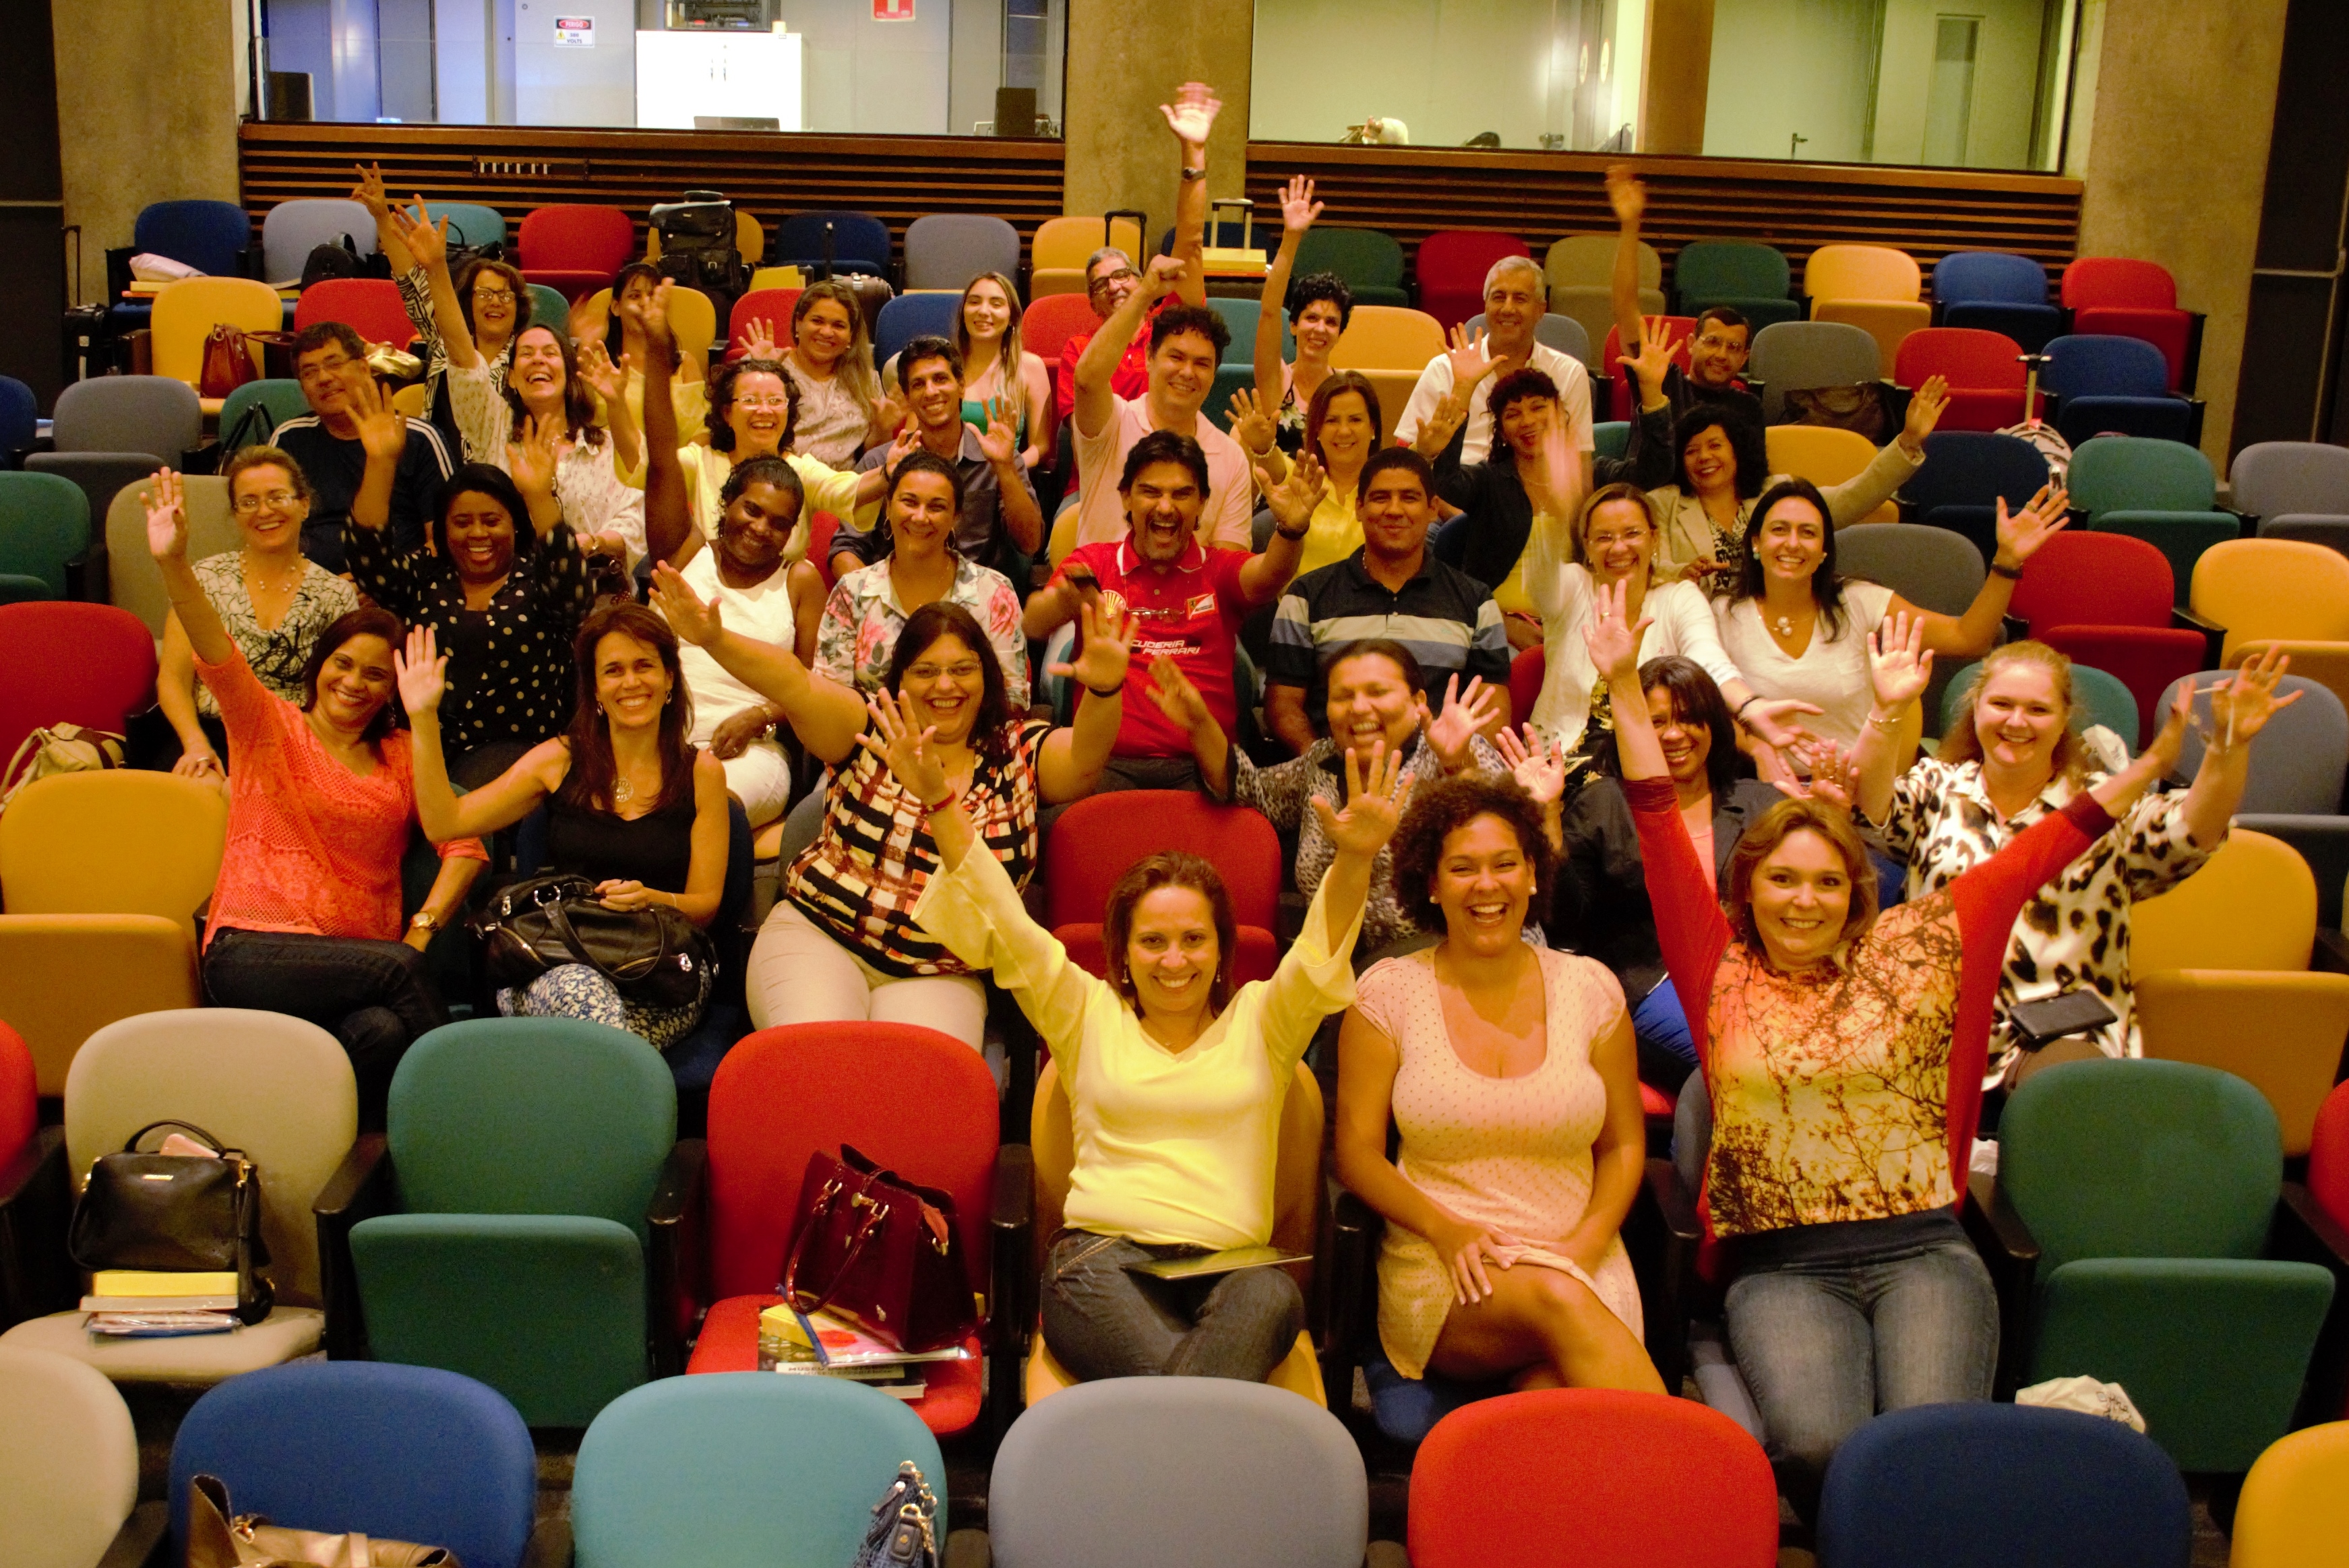 Homens e mulheres com os braços erguidos posam animados para foto em auditório com cadeiras coloridas.